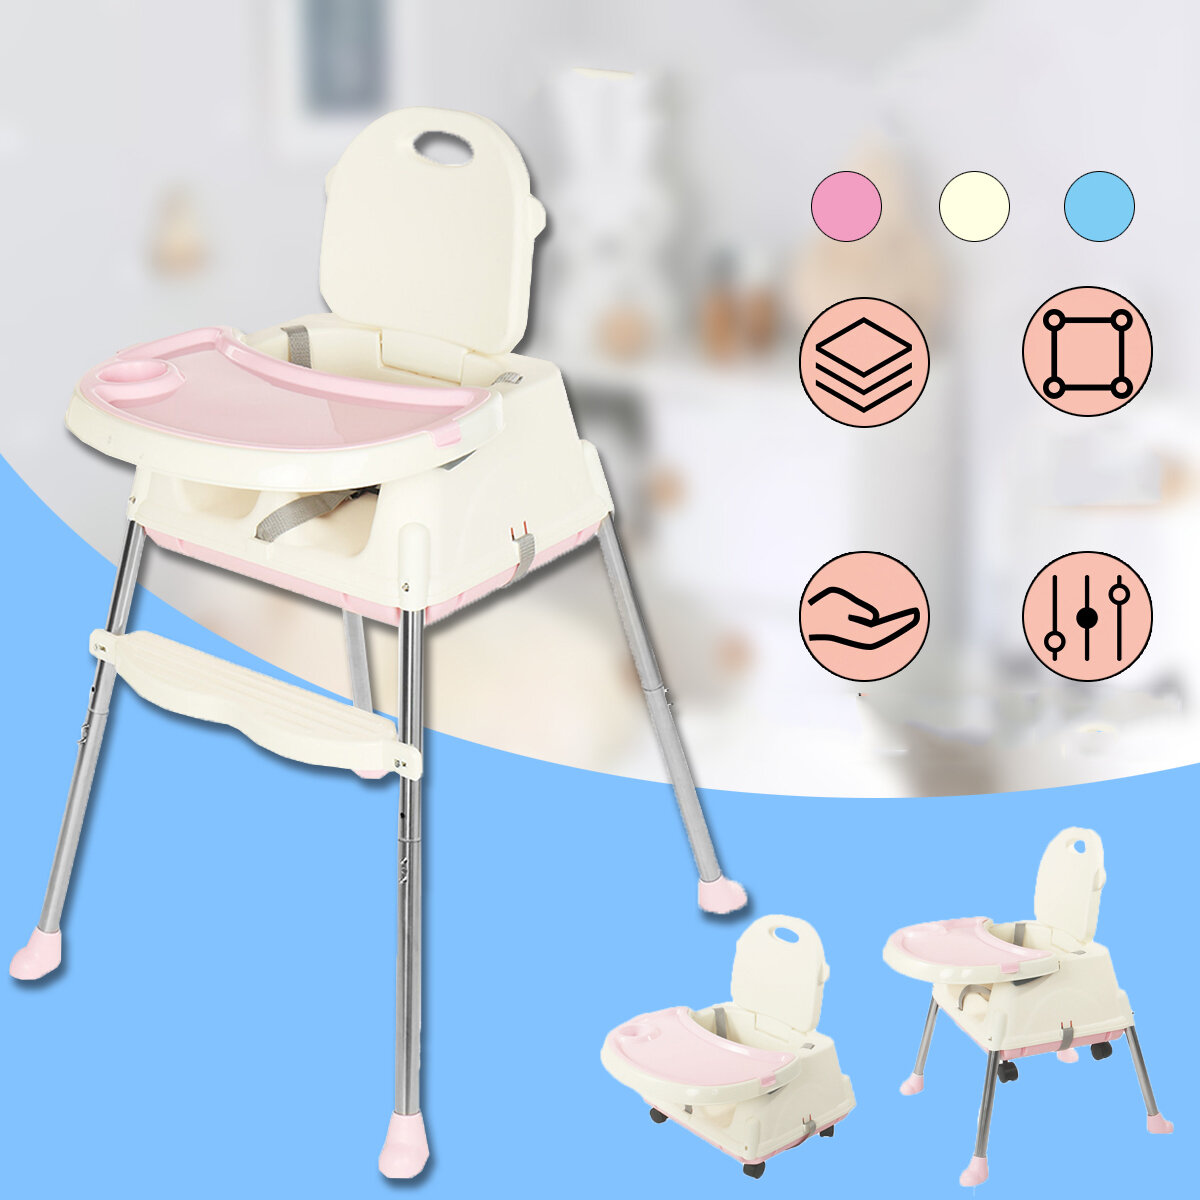 

Регулируемый детский стульчик KUDOSALE 3 в 1, трансформируемое игровое сиденье, Booster, для кормления малышей с лотком-